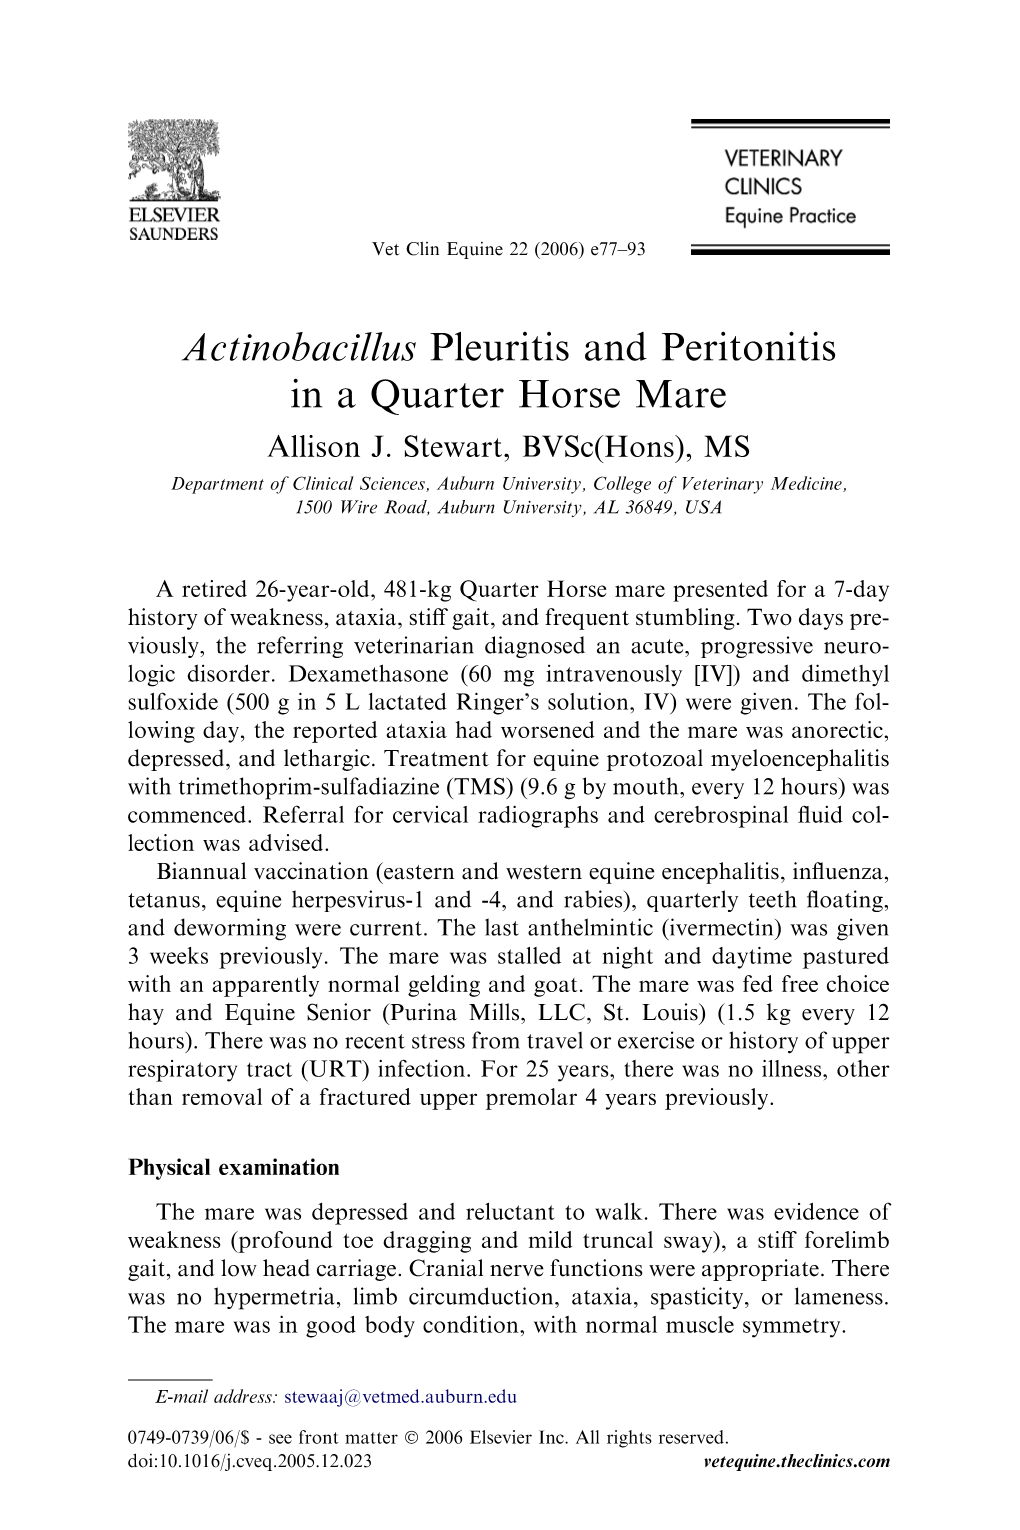 Actinobacillus Pleuritis and Peritonitis in a Quarter Horse Mare Allison J